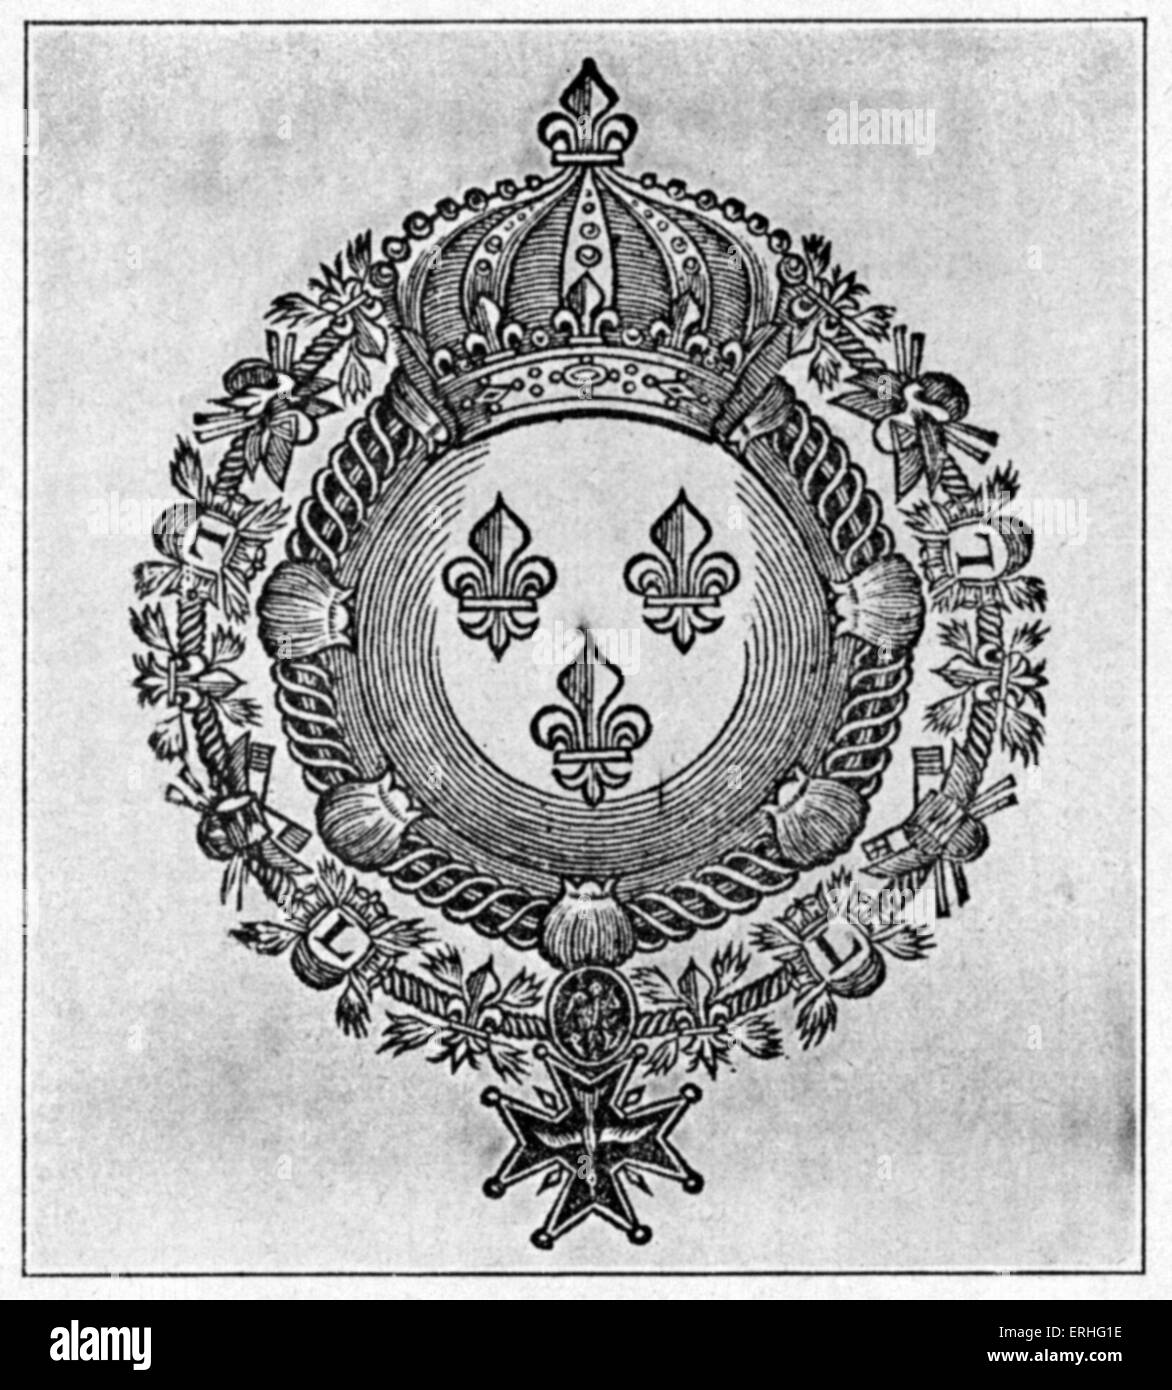 Les armes de France, gravure sur bois dans le titre de 'Siècle de Louis le Grand" par Charles Perrault, 1687. 12 mai 1703 Jan 1628-16. Banque D'Images